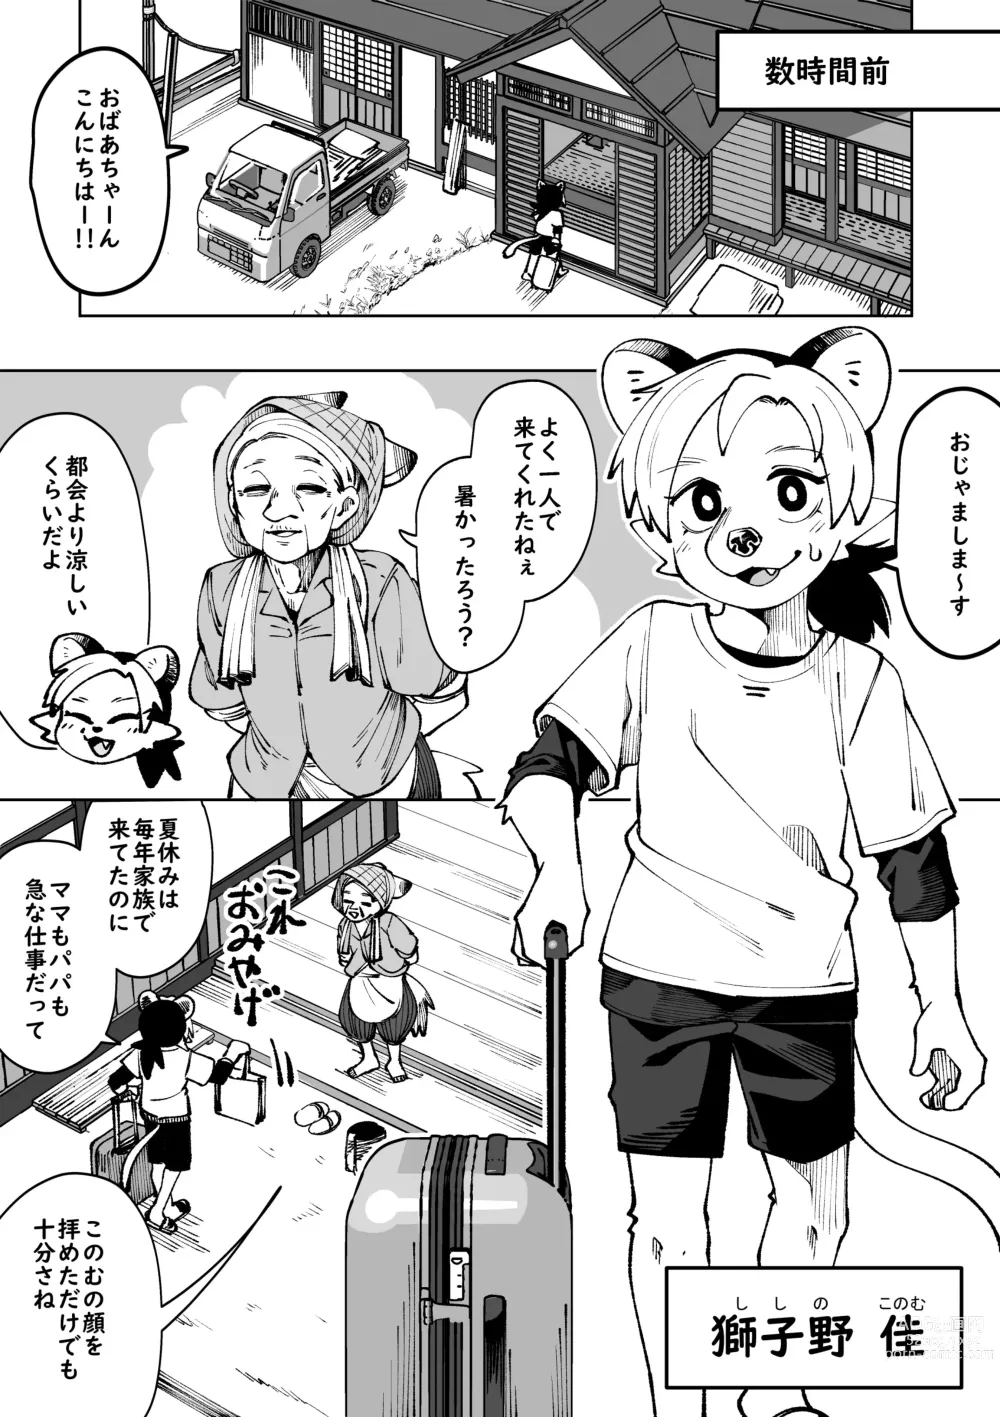 Page 6 of doujinshi Natsu ga owaru...